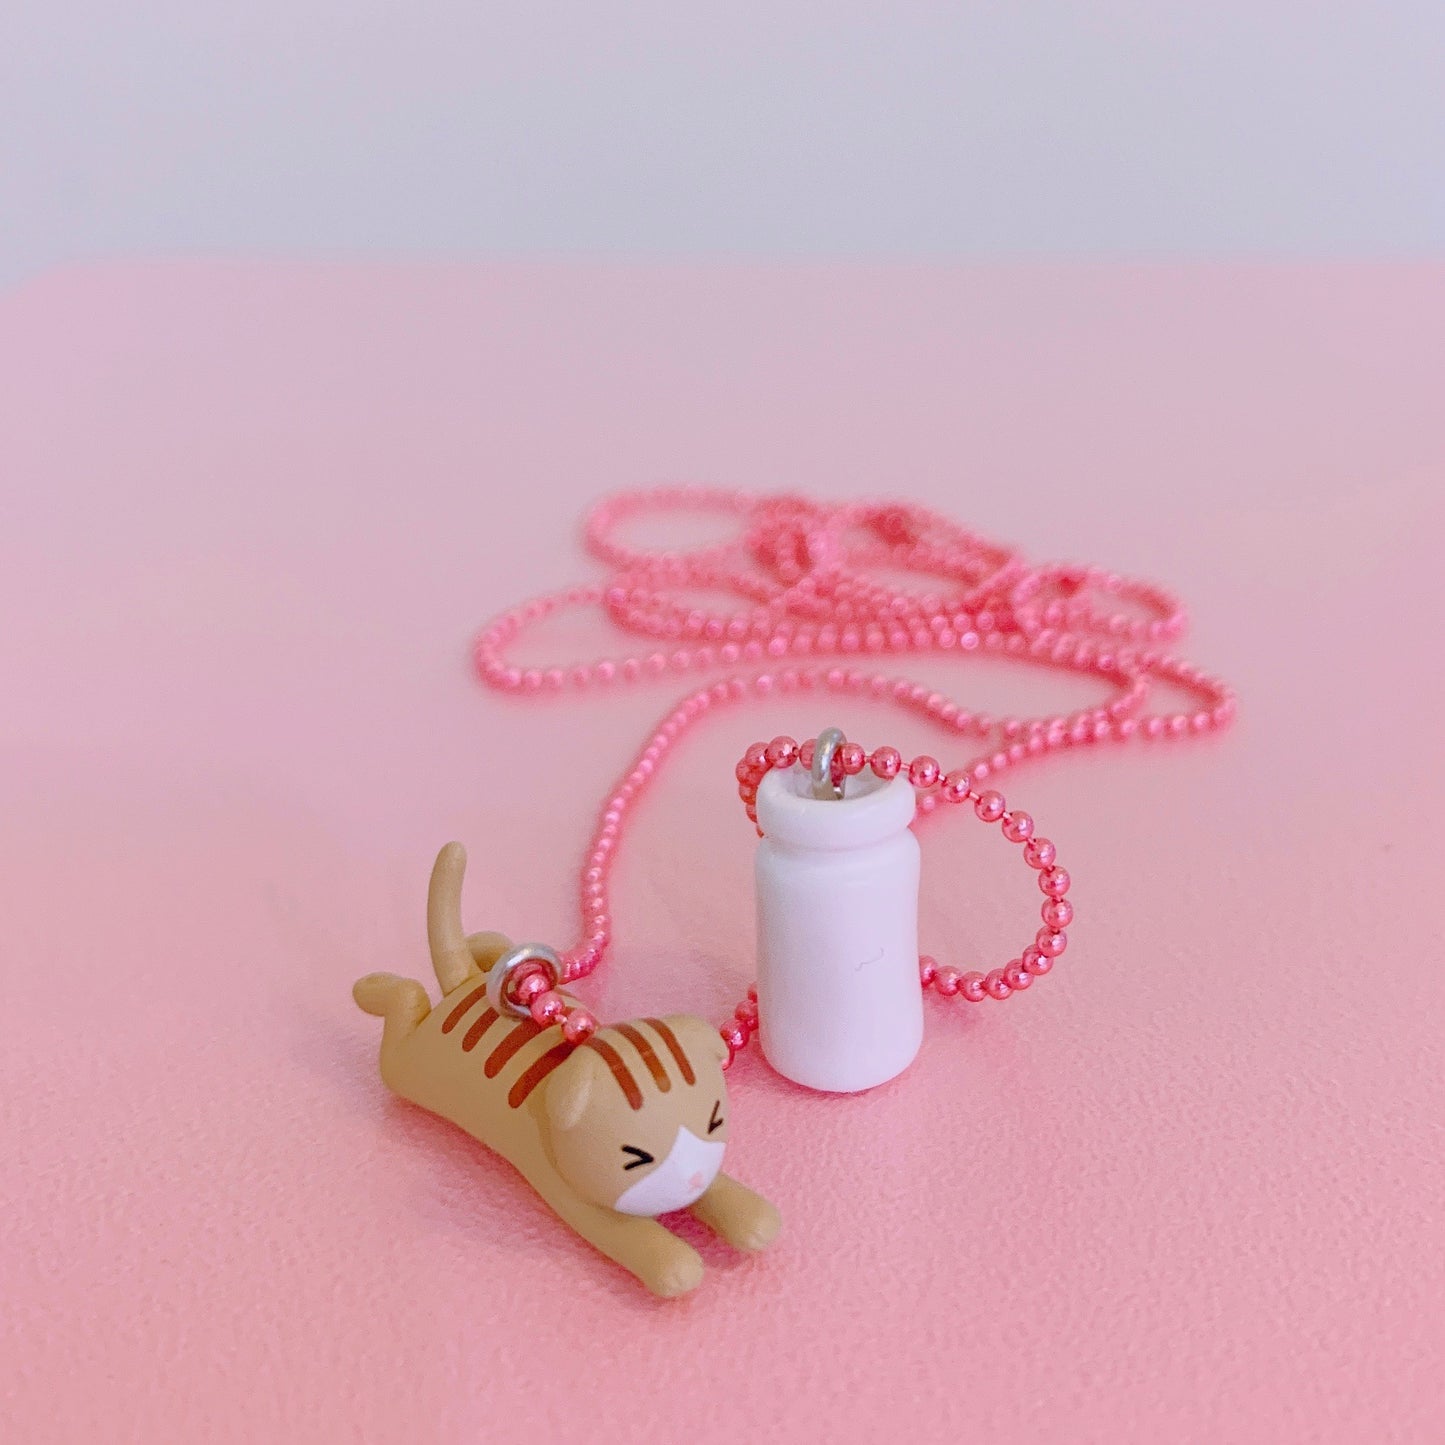 Ltd. Pop Cutie Kats Kitchen Necklaces